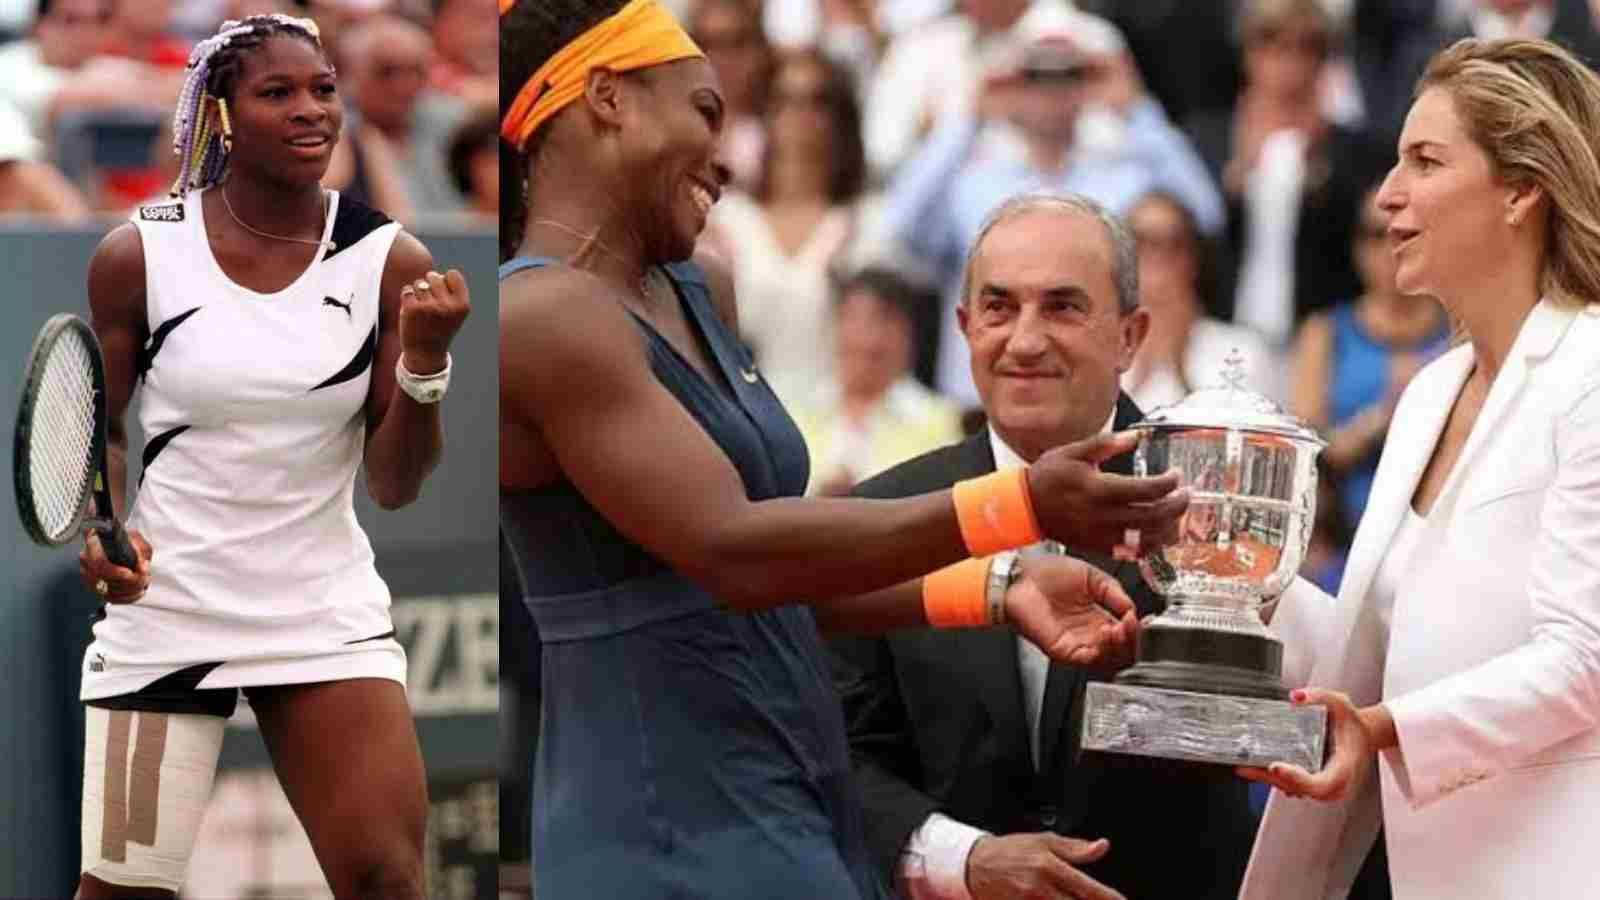 Arantxa Sánchez Vicario Trophy Serena Williams Wallpaper